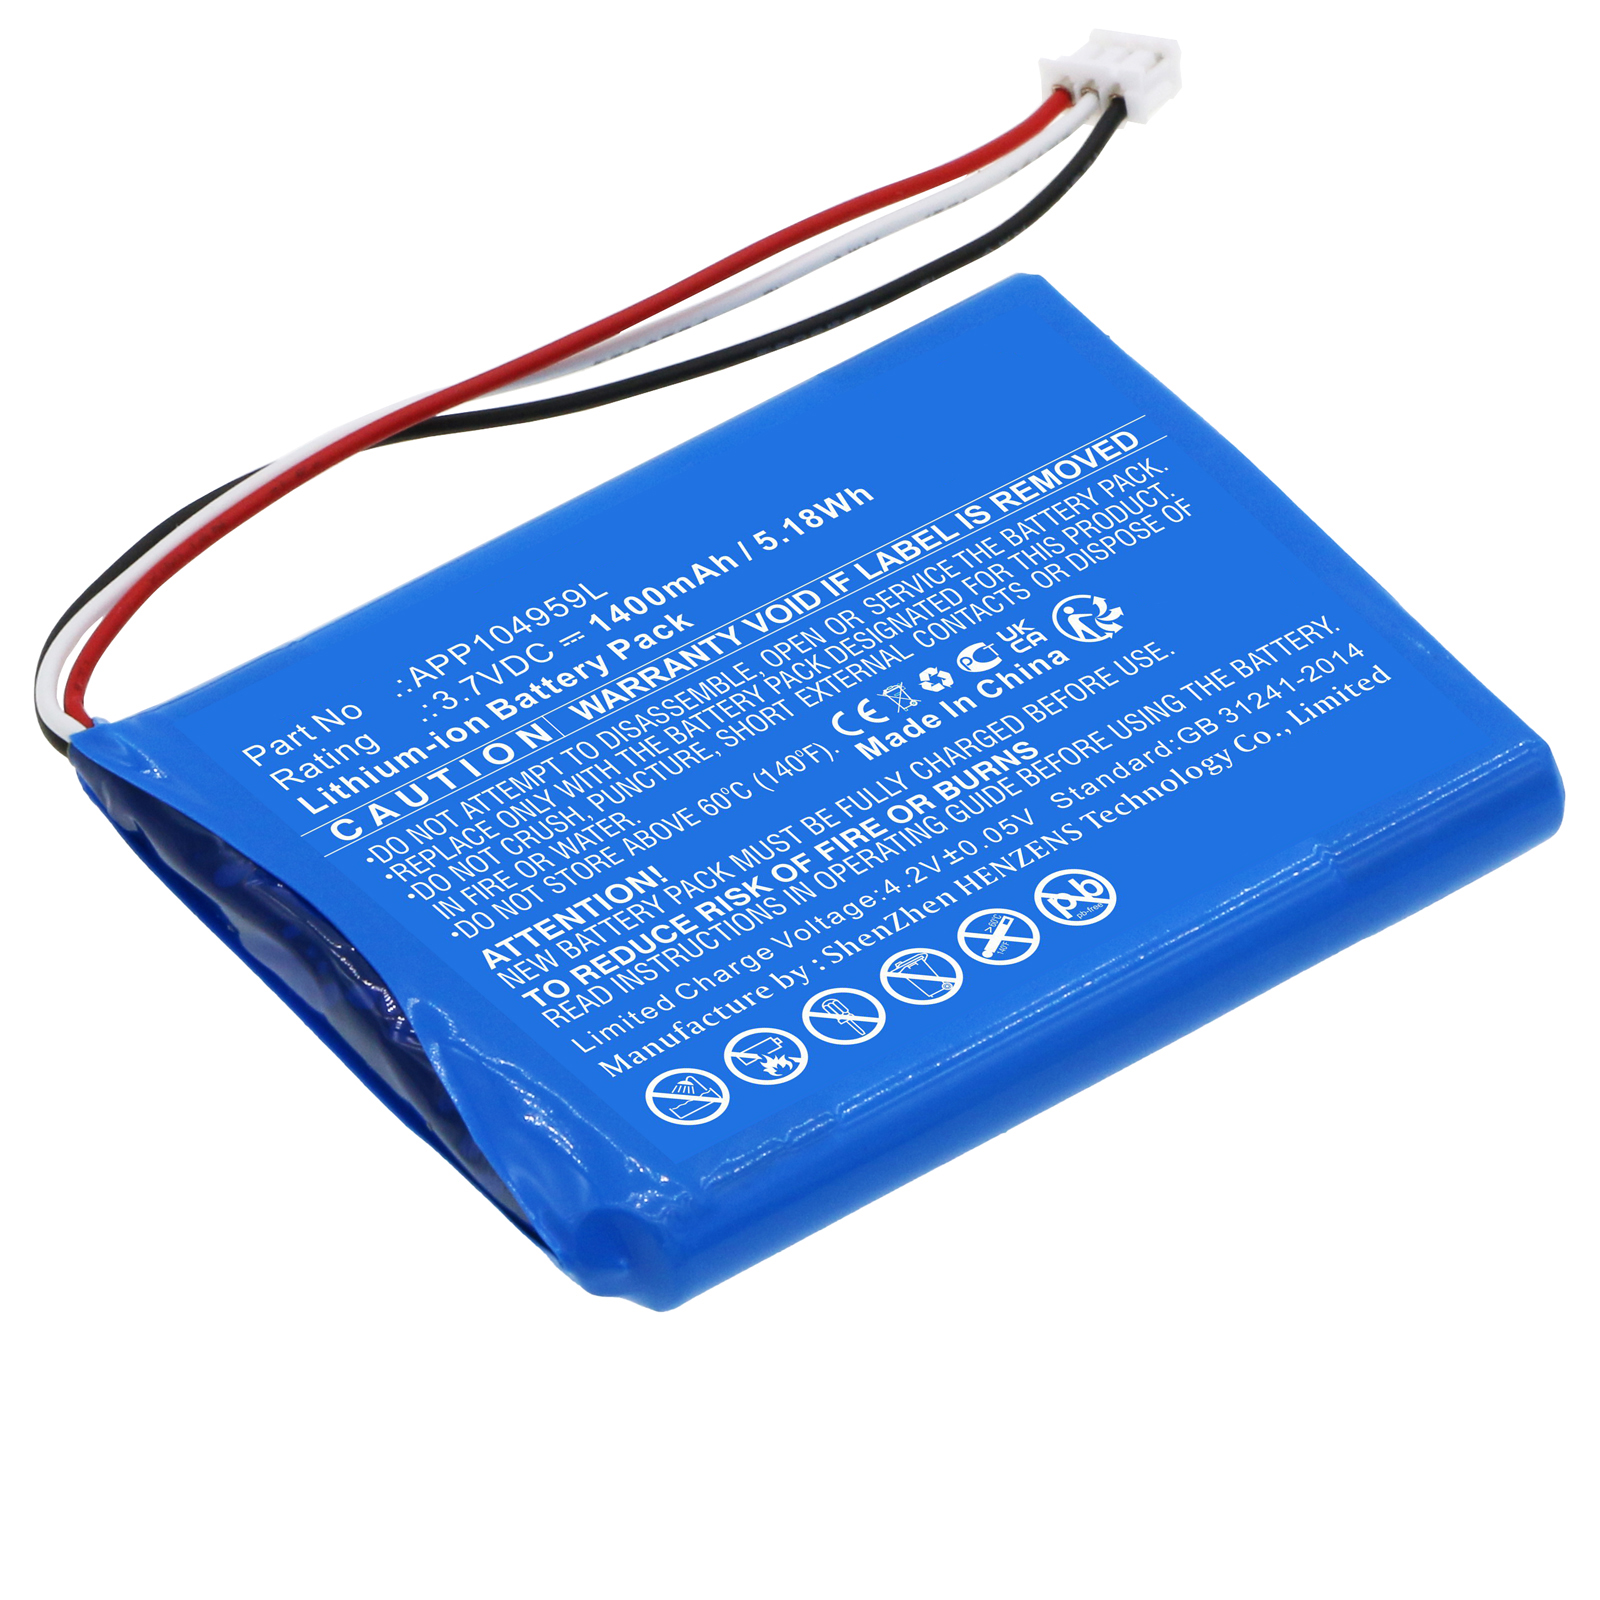 Batteries for VentureCraftAmplifier